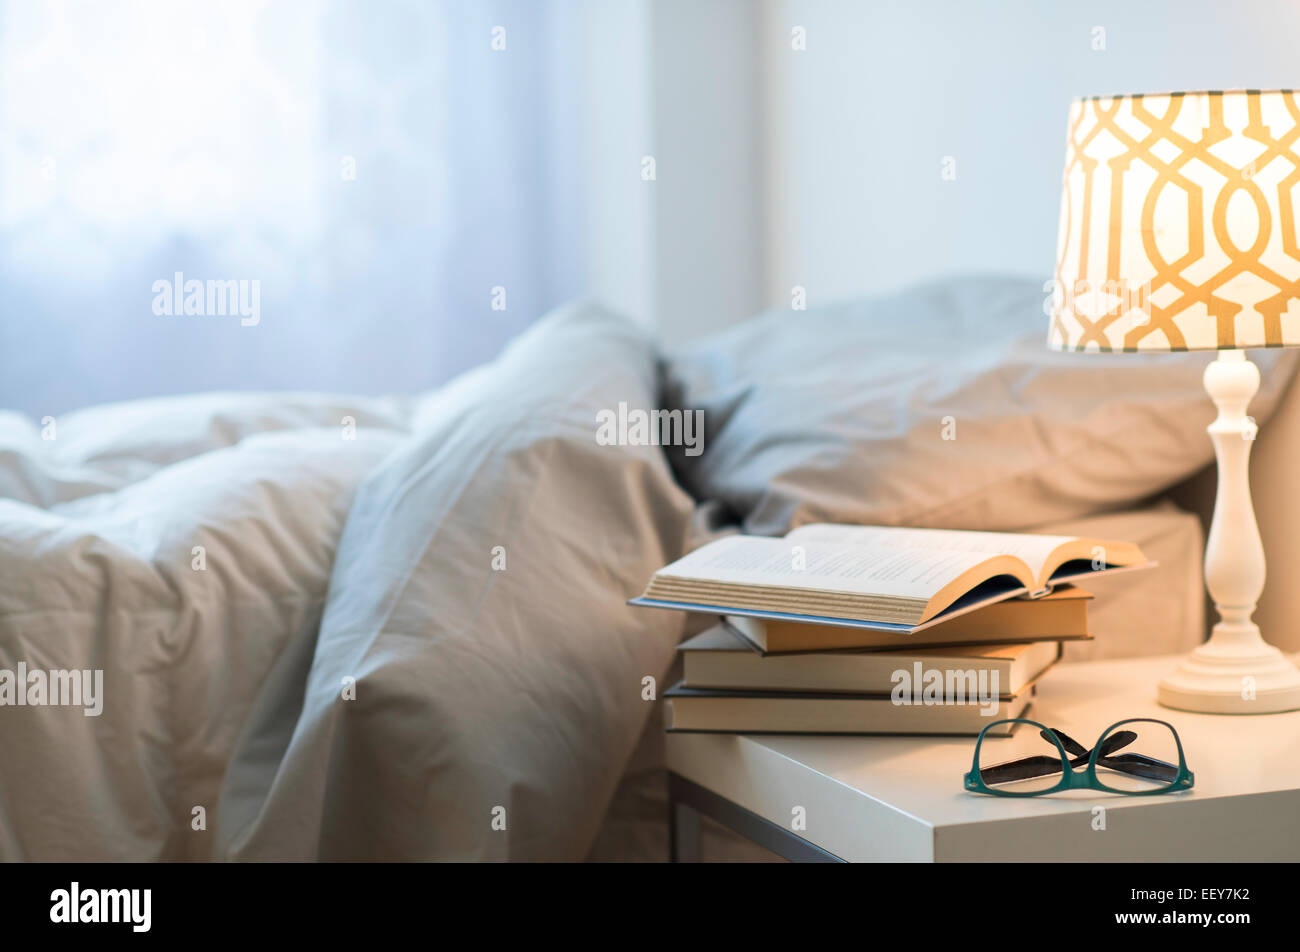 Letto con lampada, libri e occhiali sul comodino Foto Stock